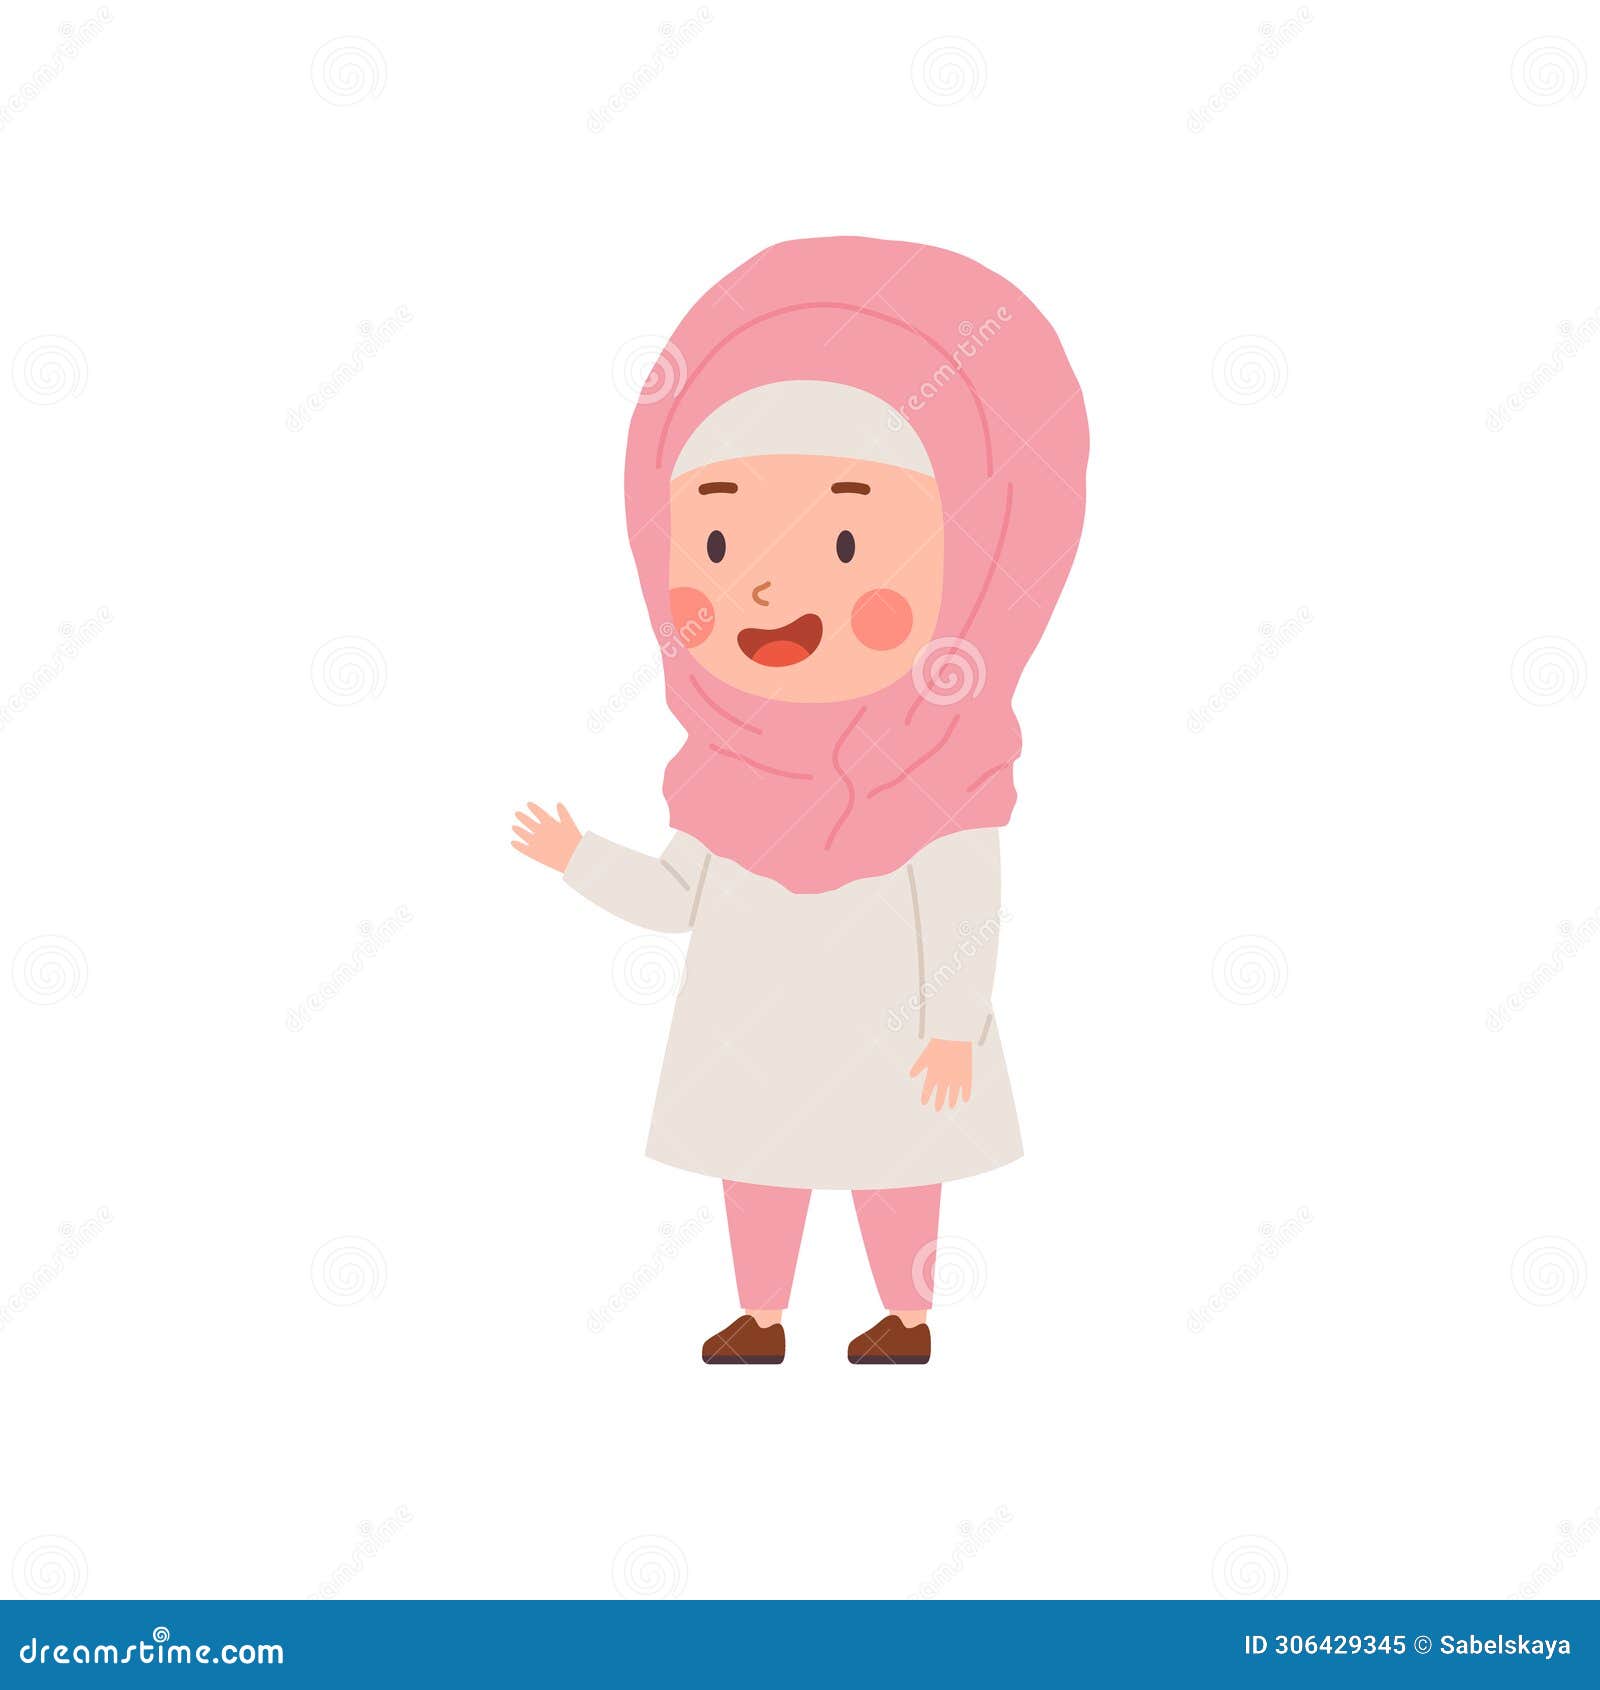 Muslim Child, Little Girl, Cartoon Vector Illustration Isolated on ...